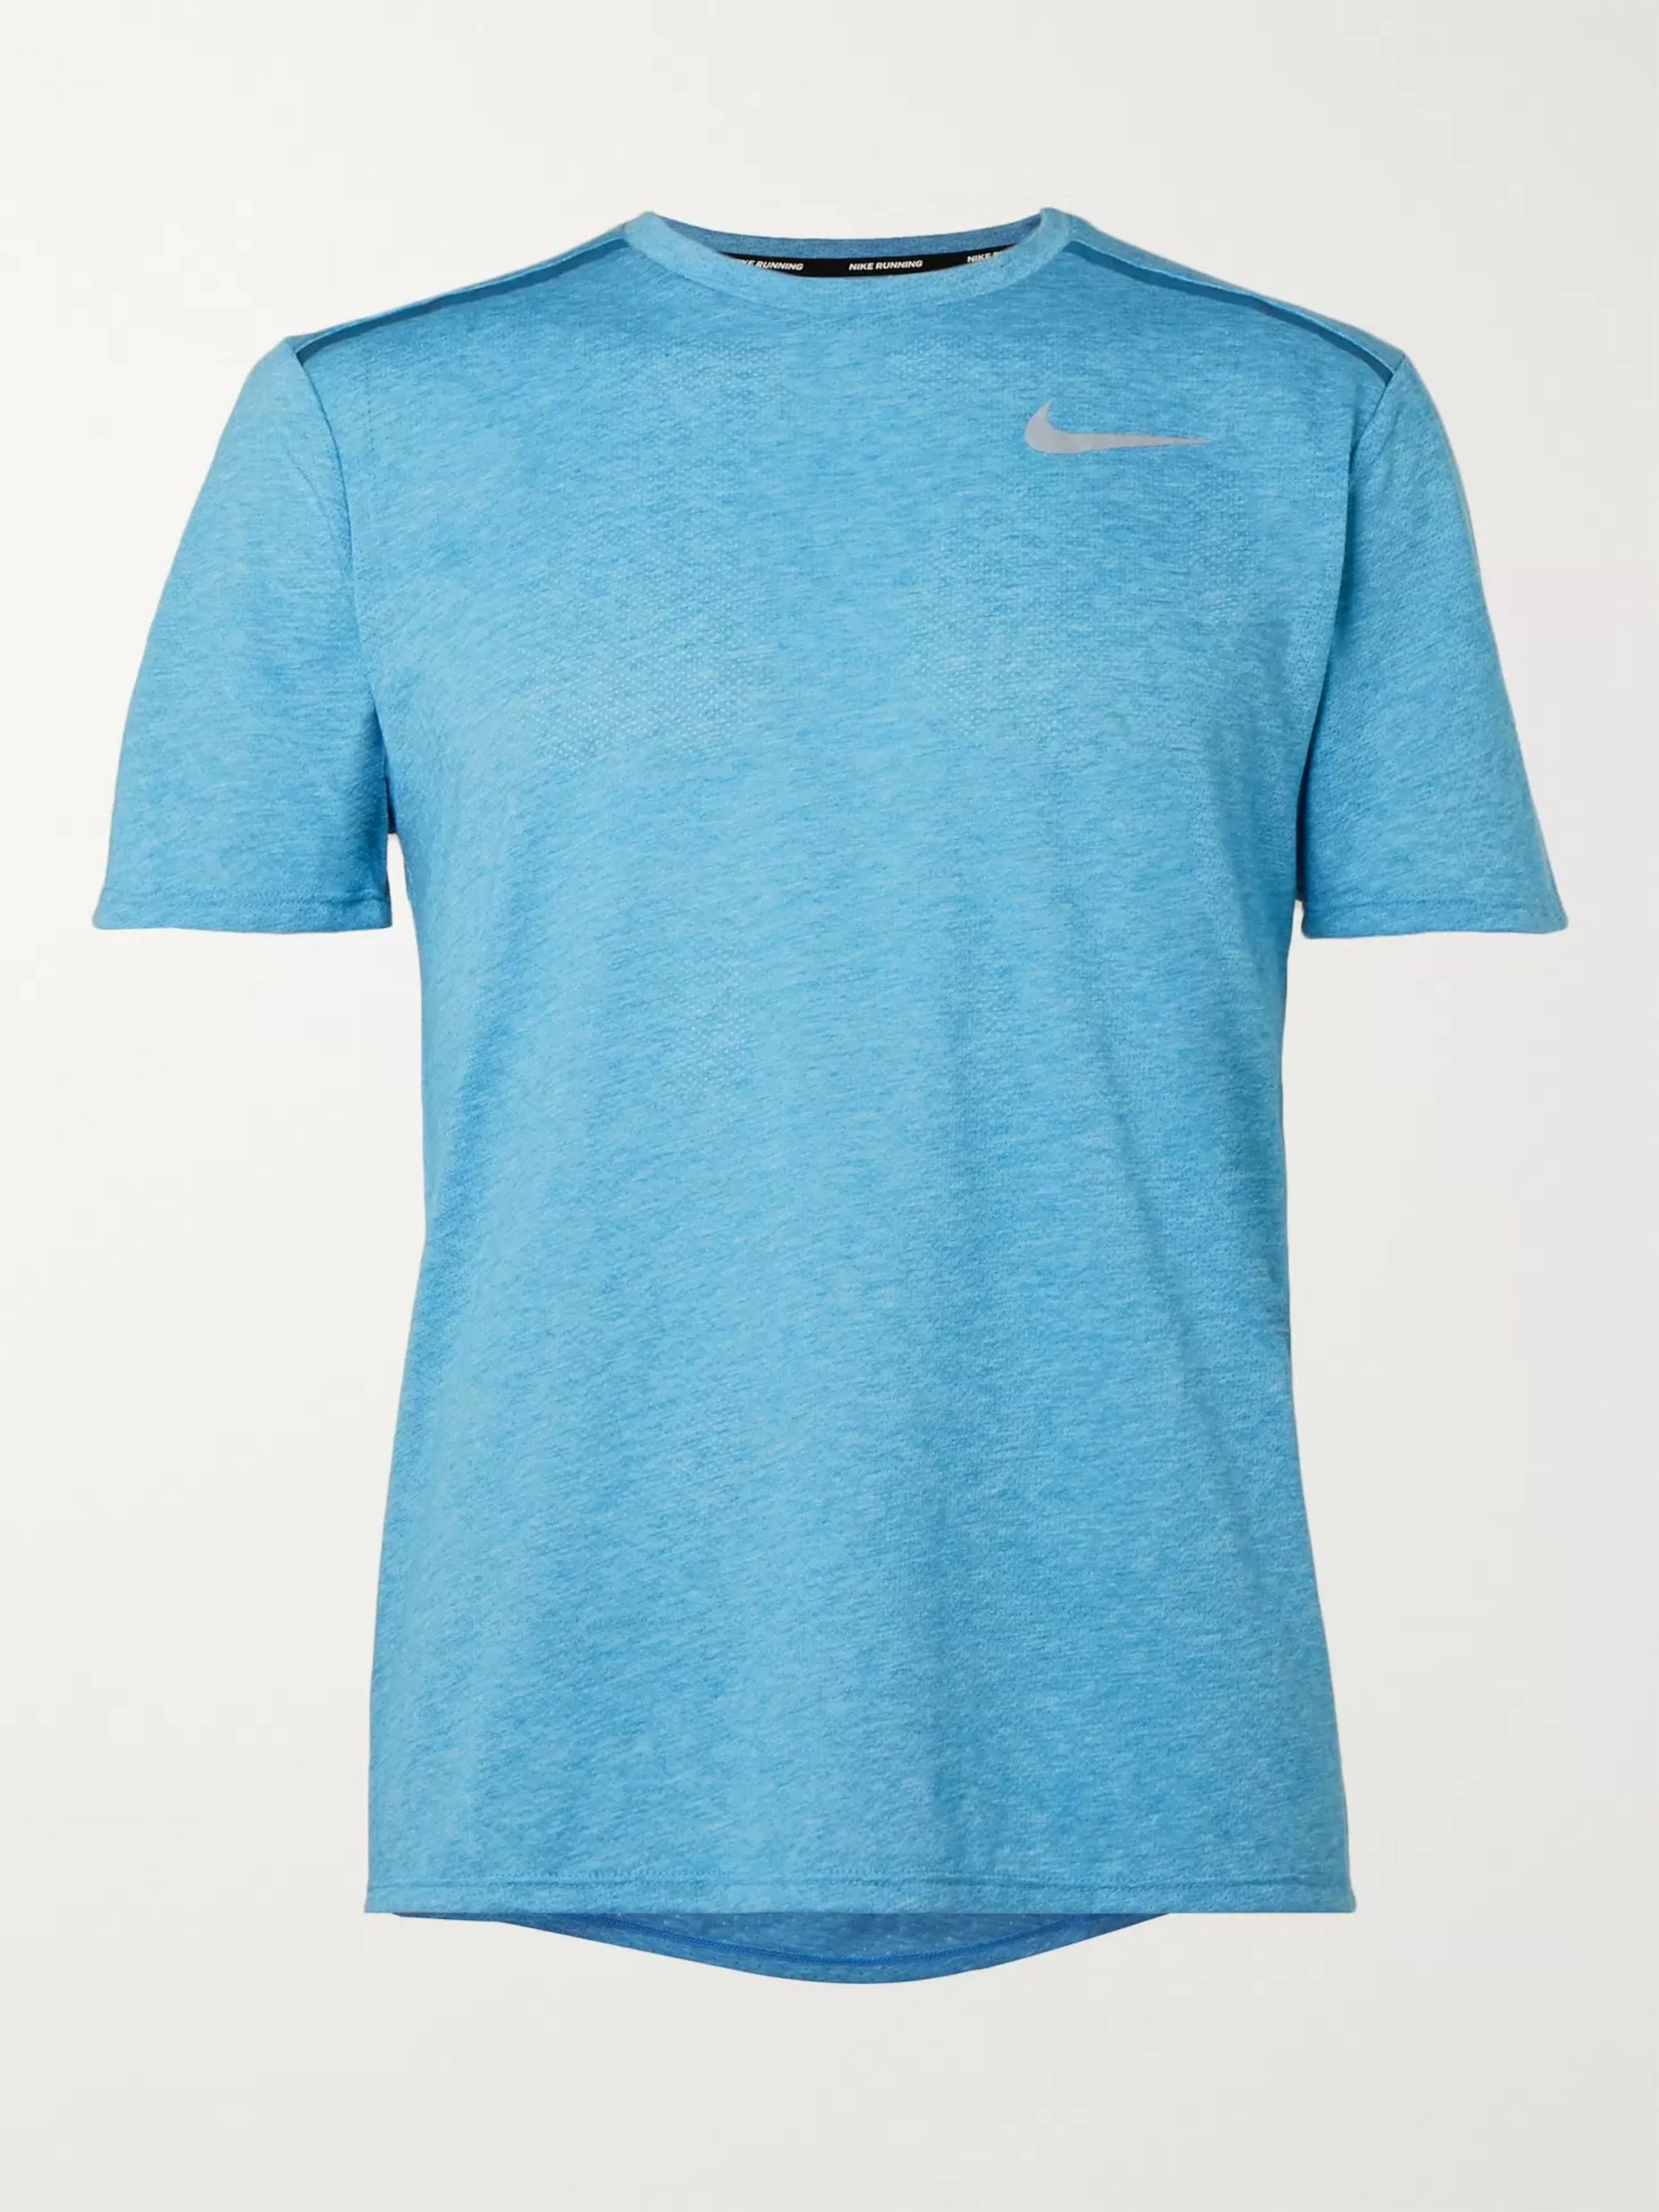 Buy > light blue nike shirt > in stock